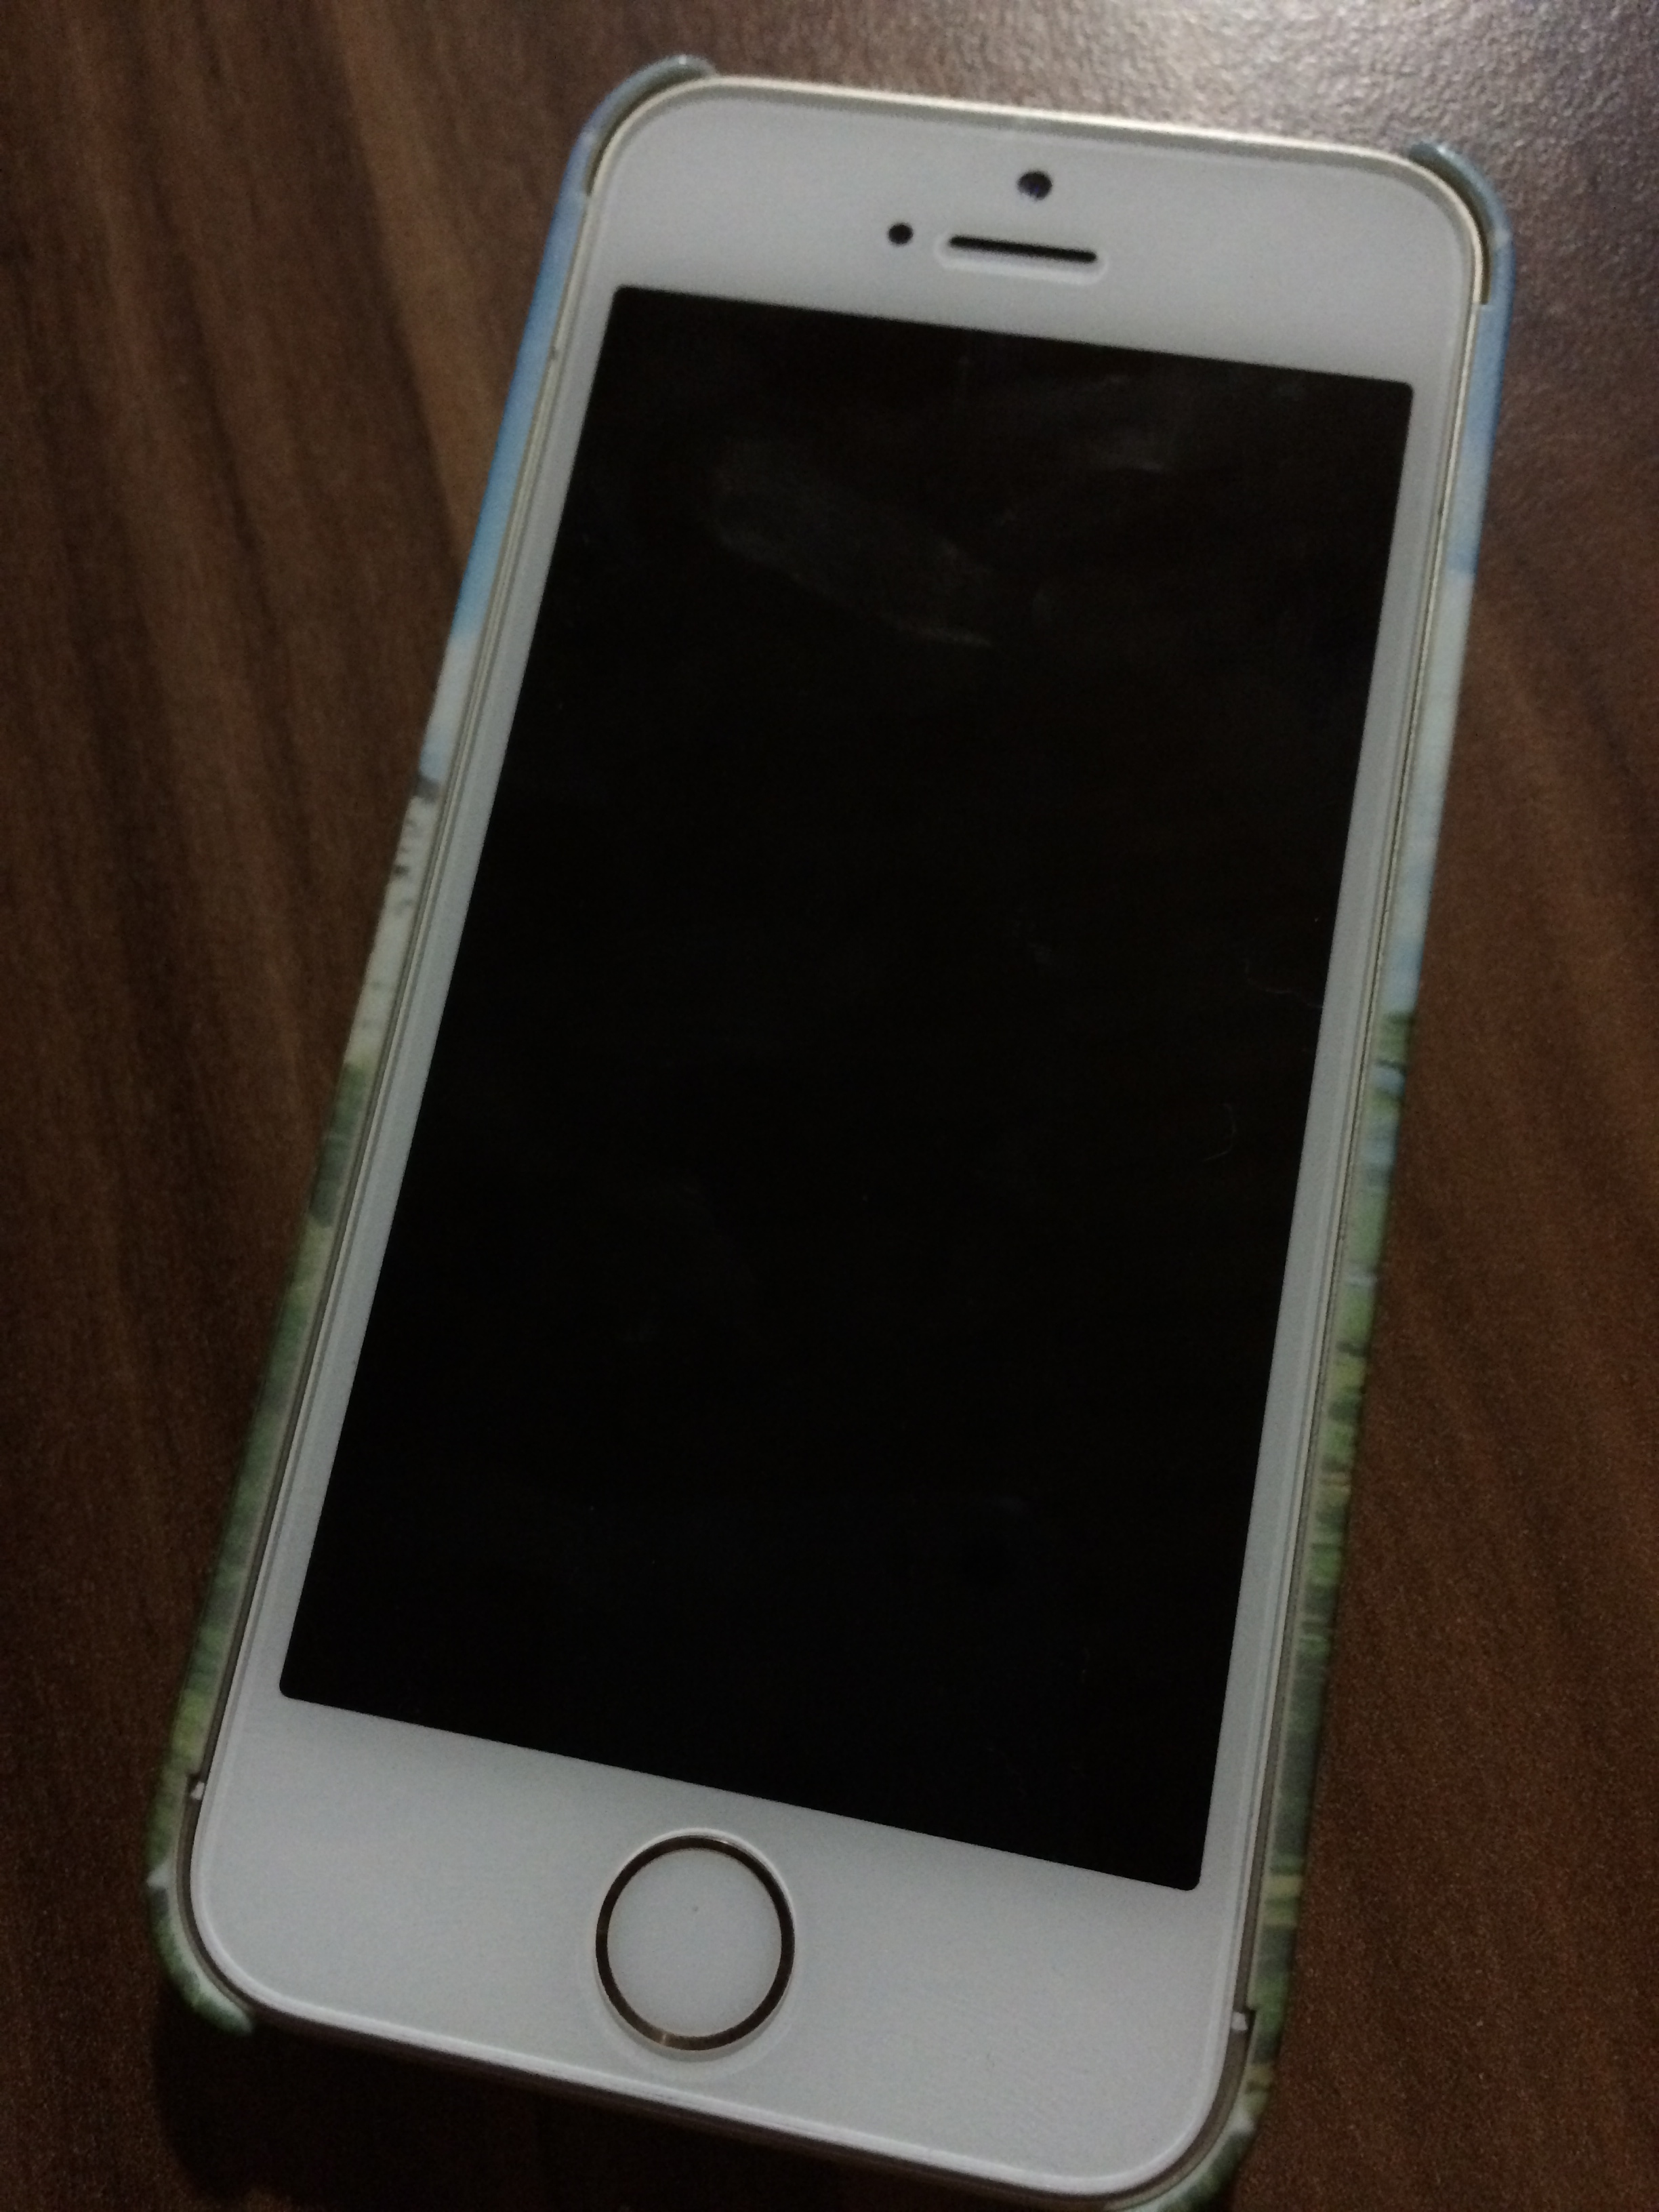 Caseable - Die Premium iPhone 5s Hülle mit Besonderheiten im Test 2